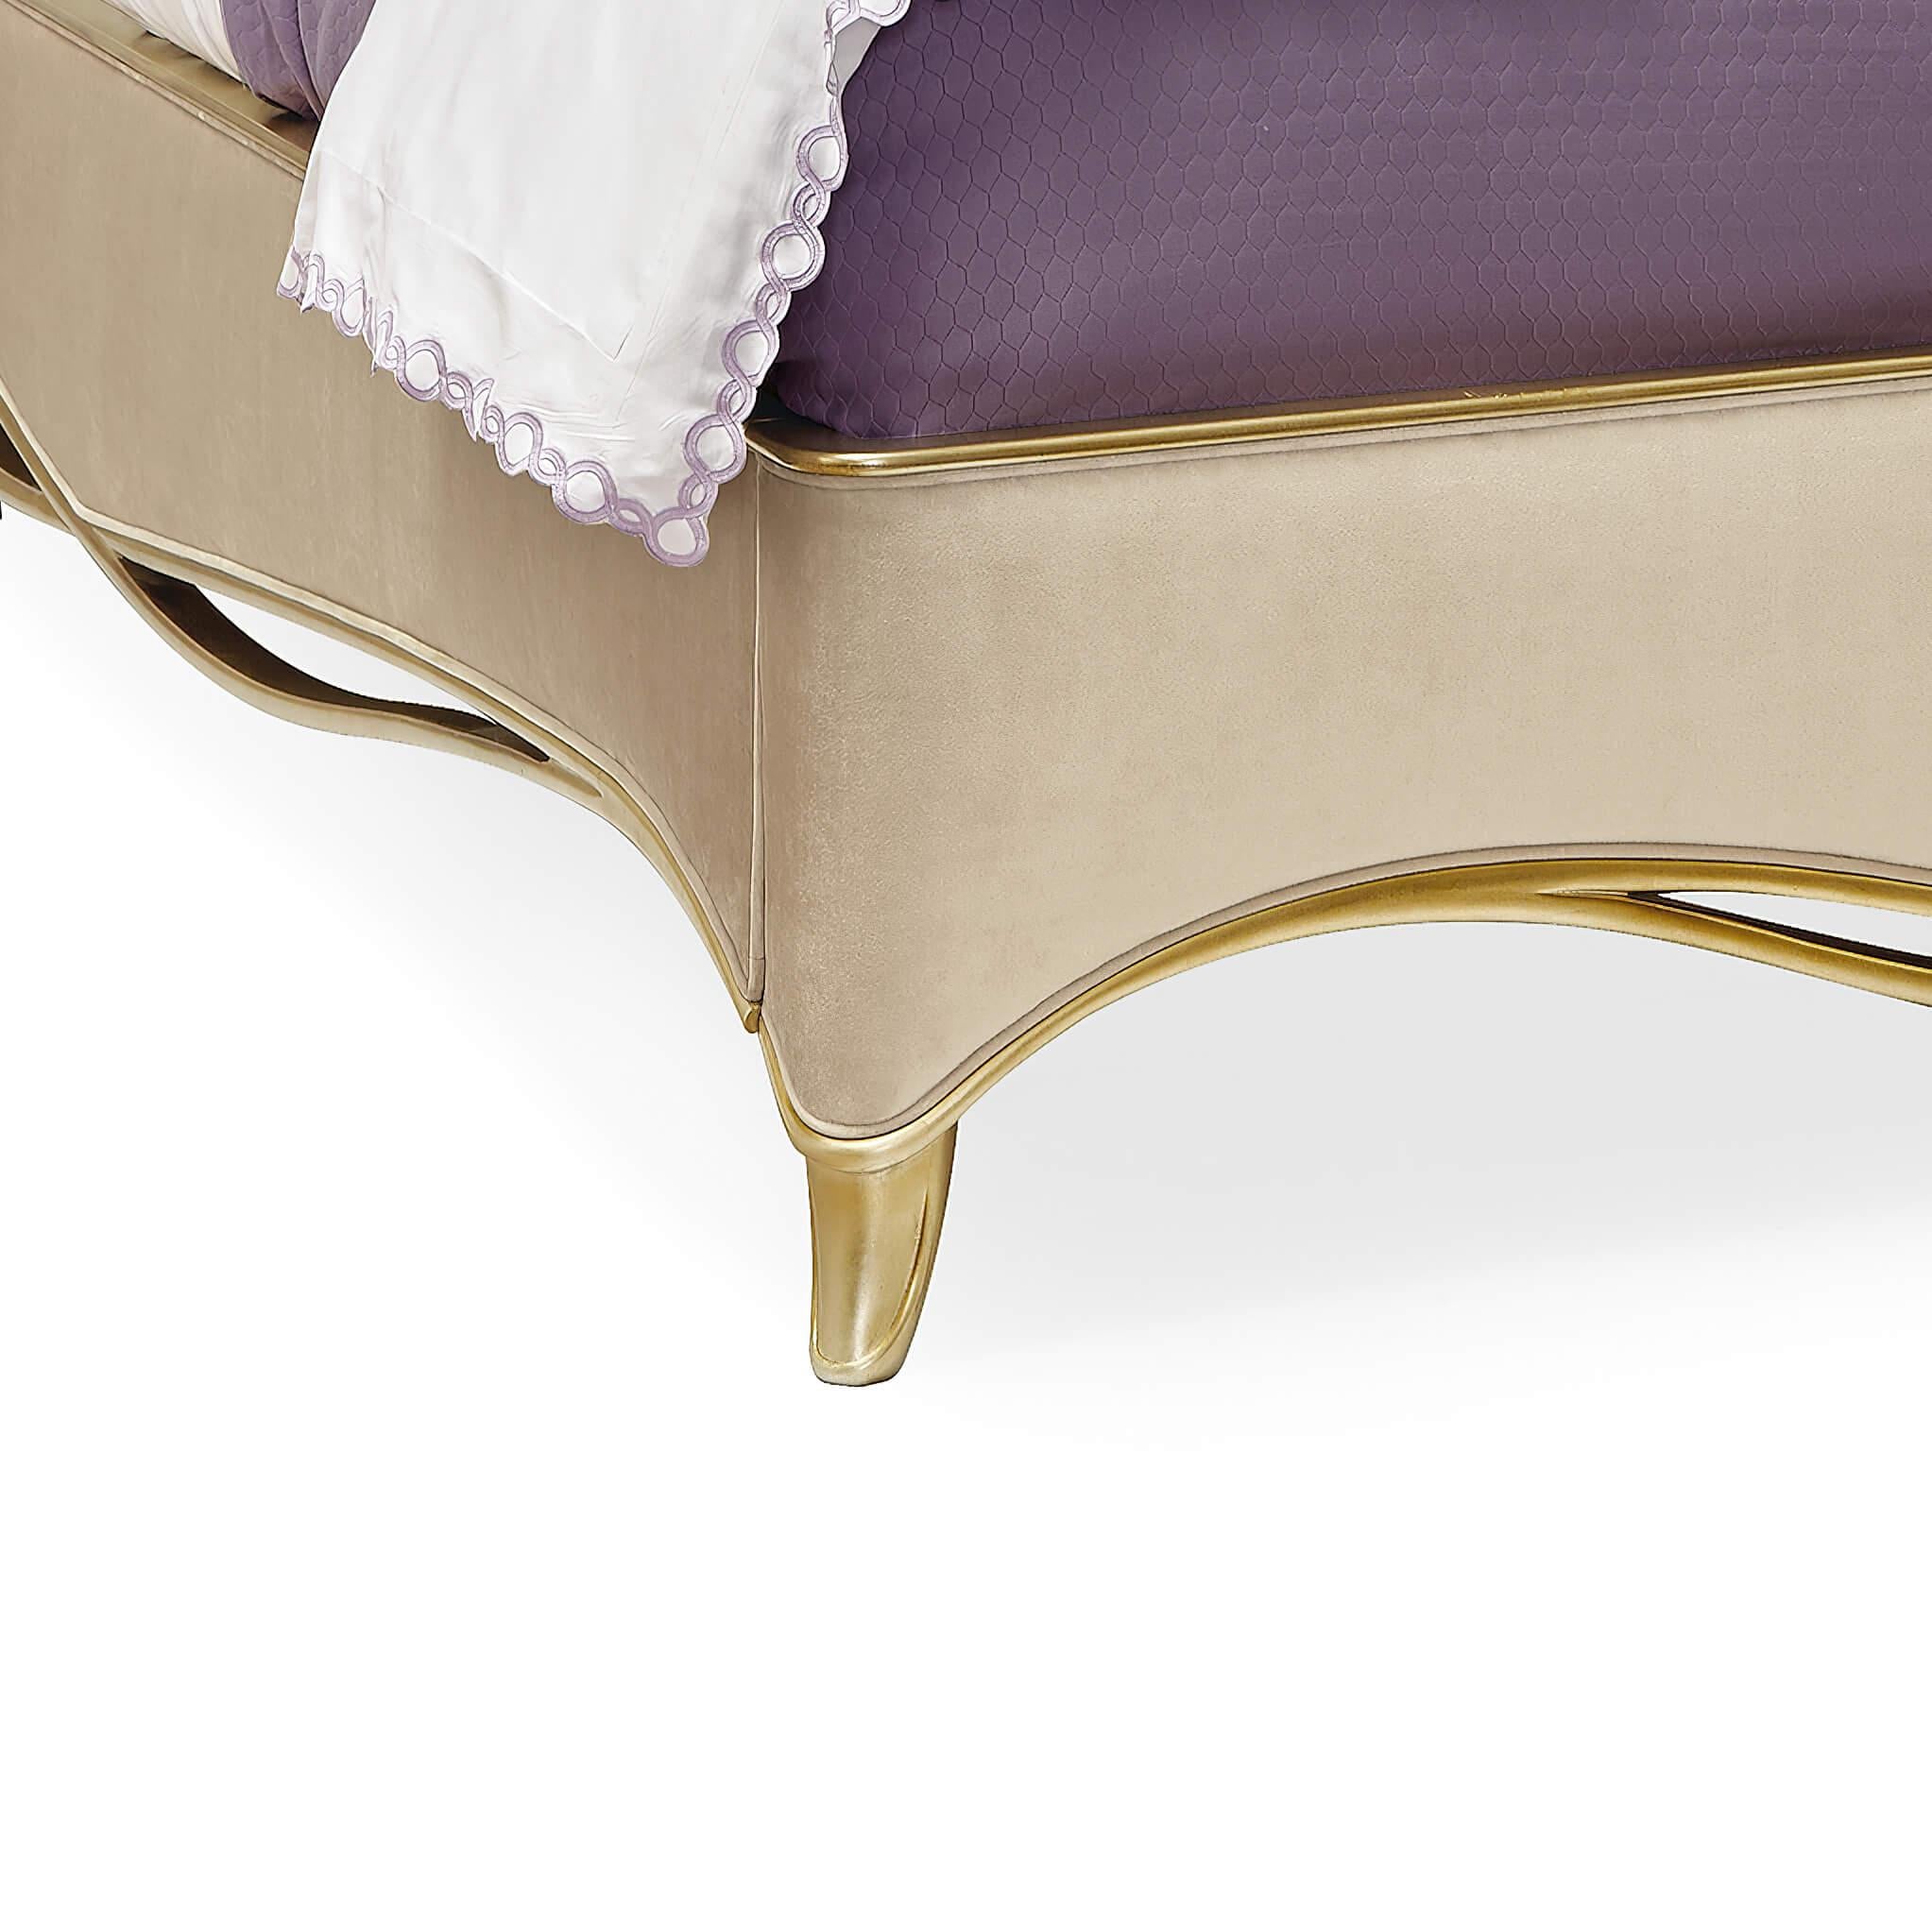 Königsbett im Rokoko-Stil mit vergoldeten Bändern (21. Jahrhundert und zeitgenössisch)